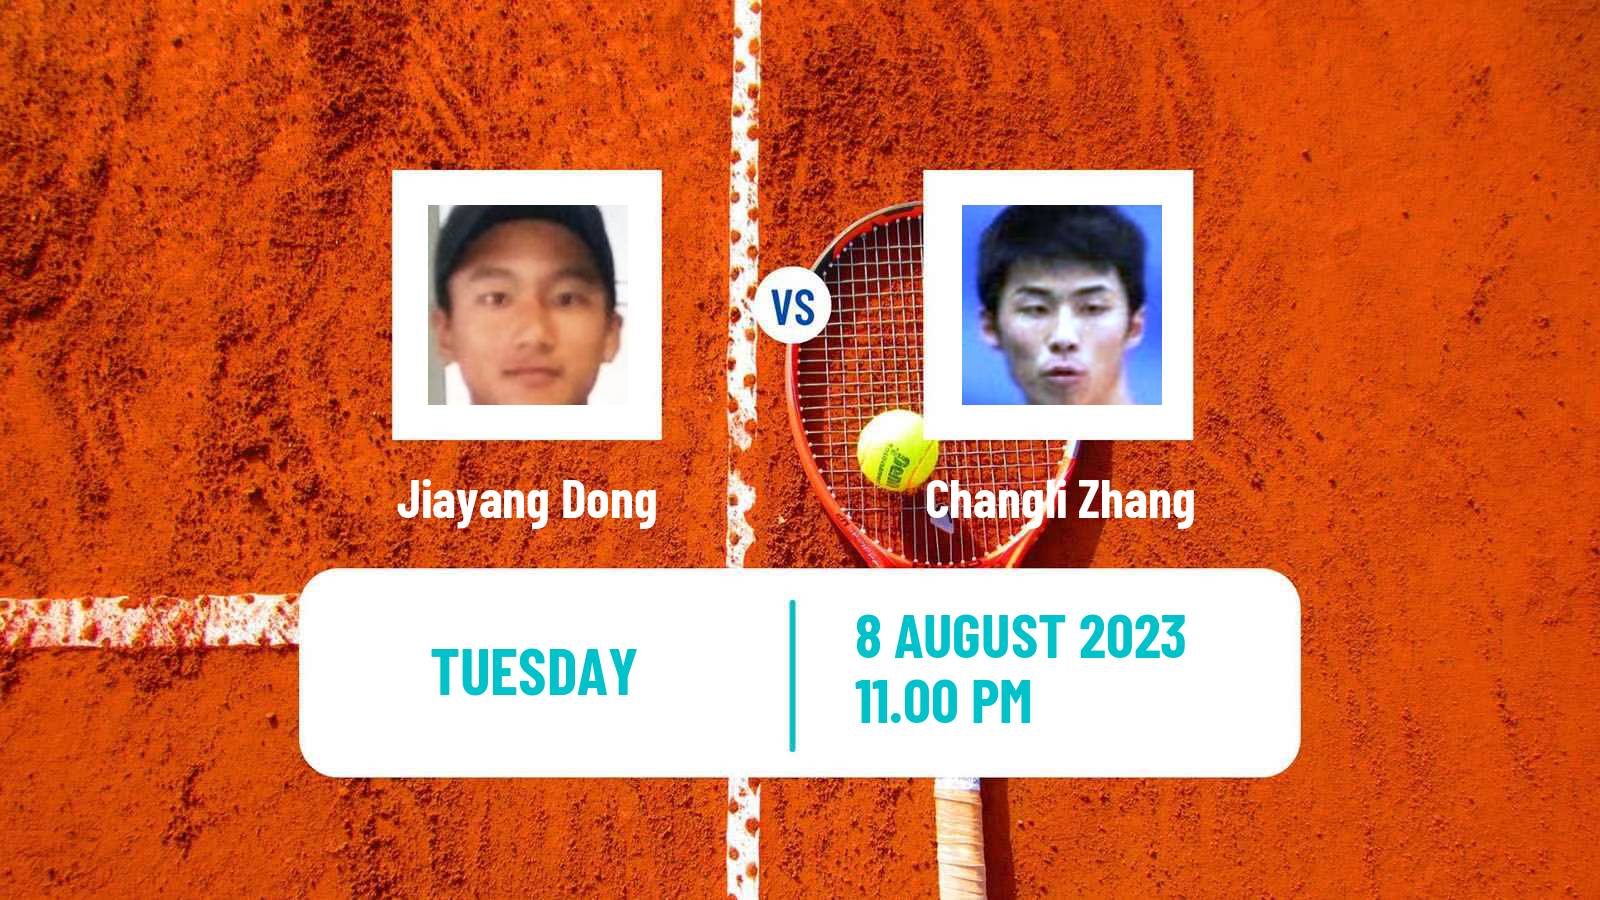 Tennis ITF M25 Baotou Men Jiayang Dong - Changli Zhang